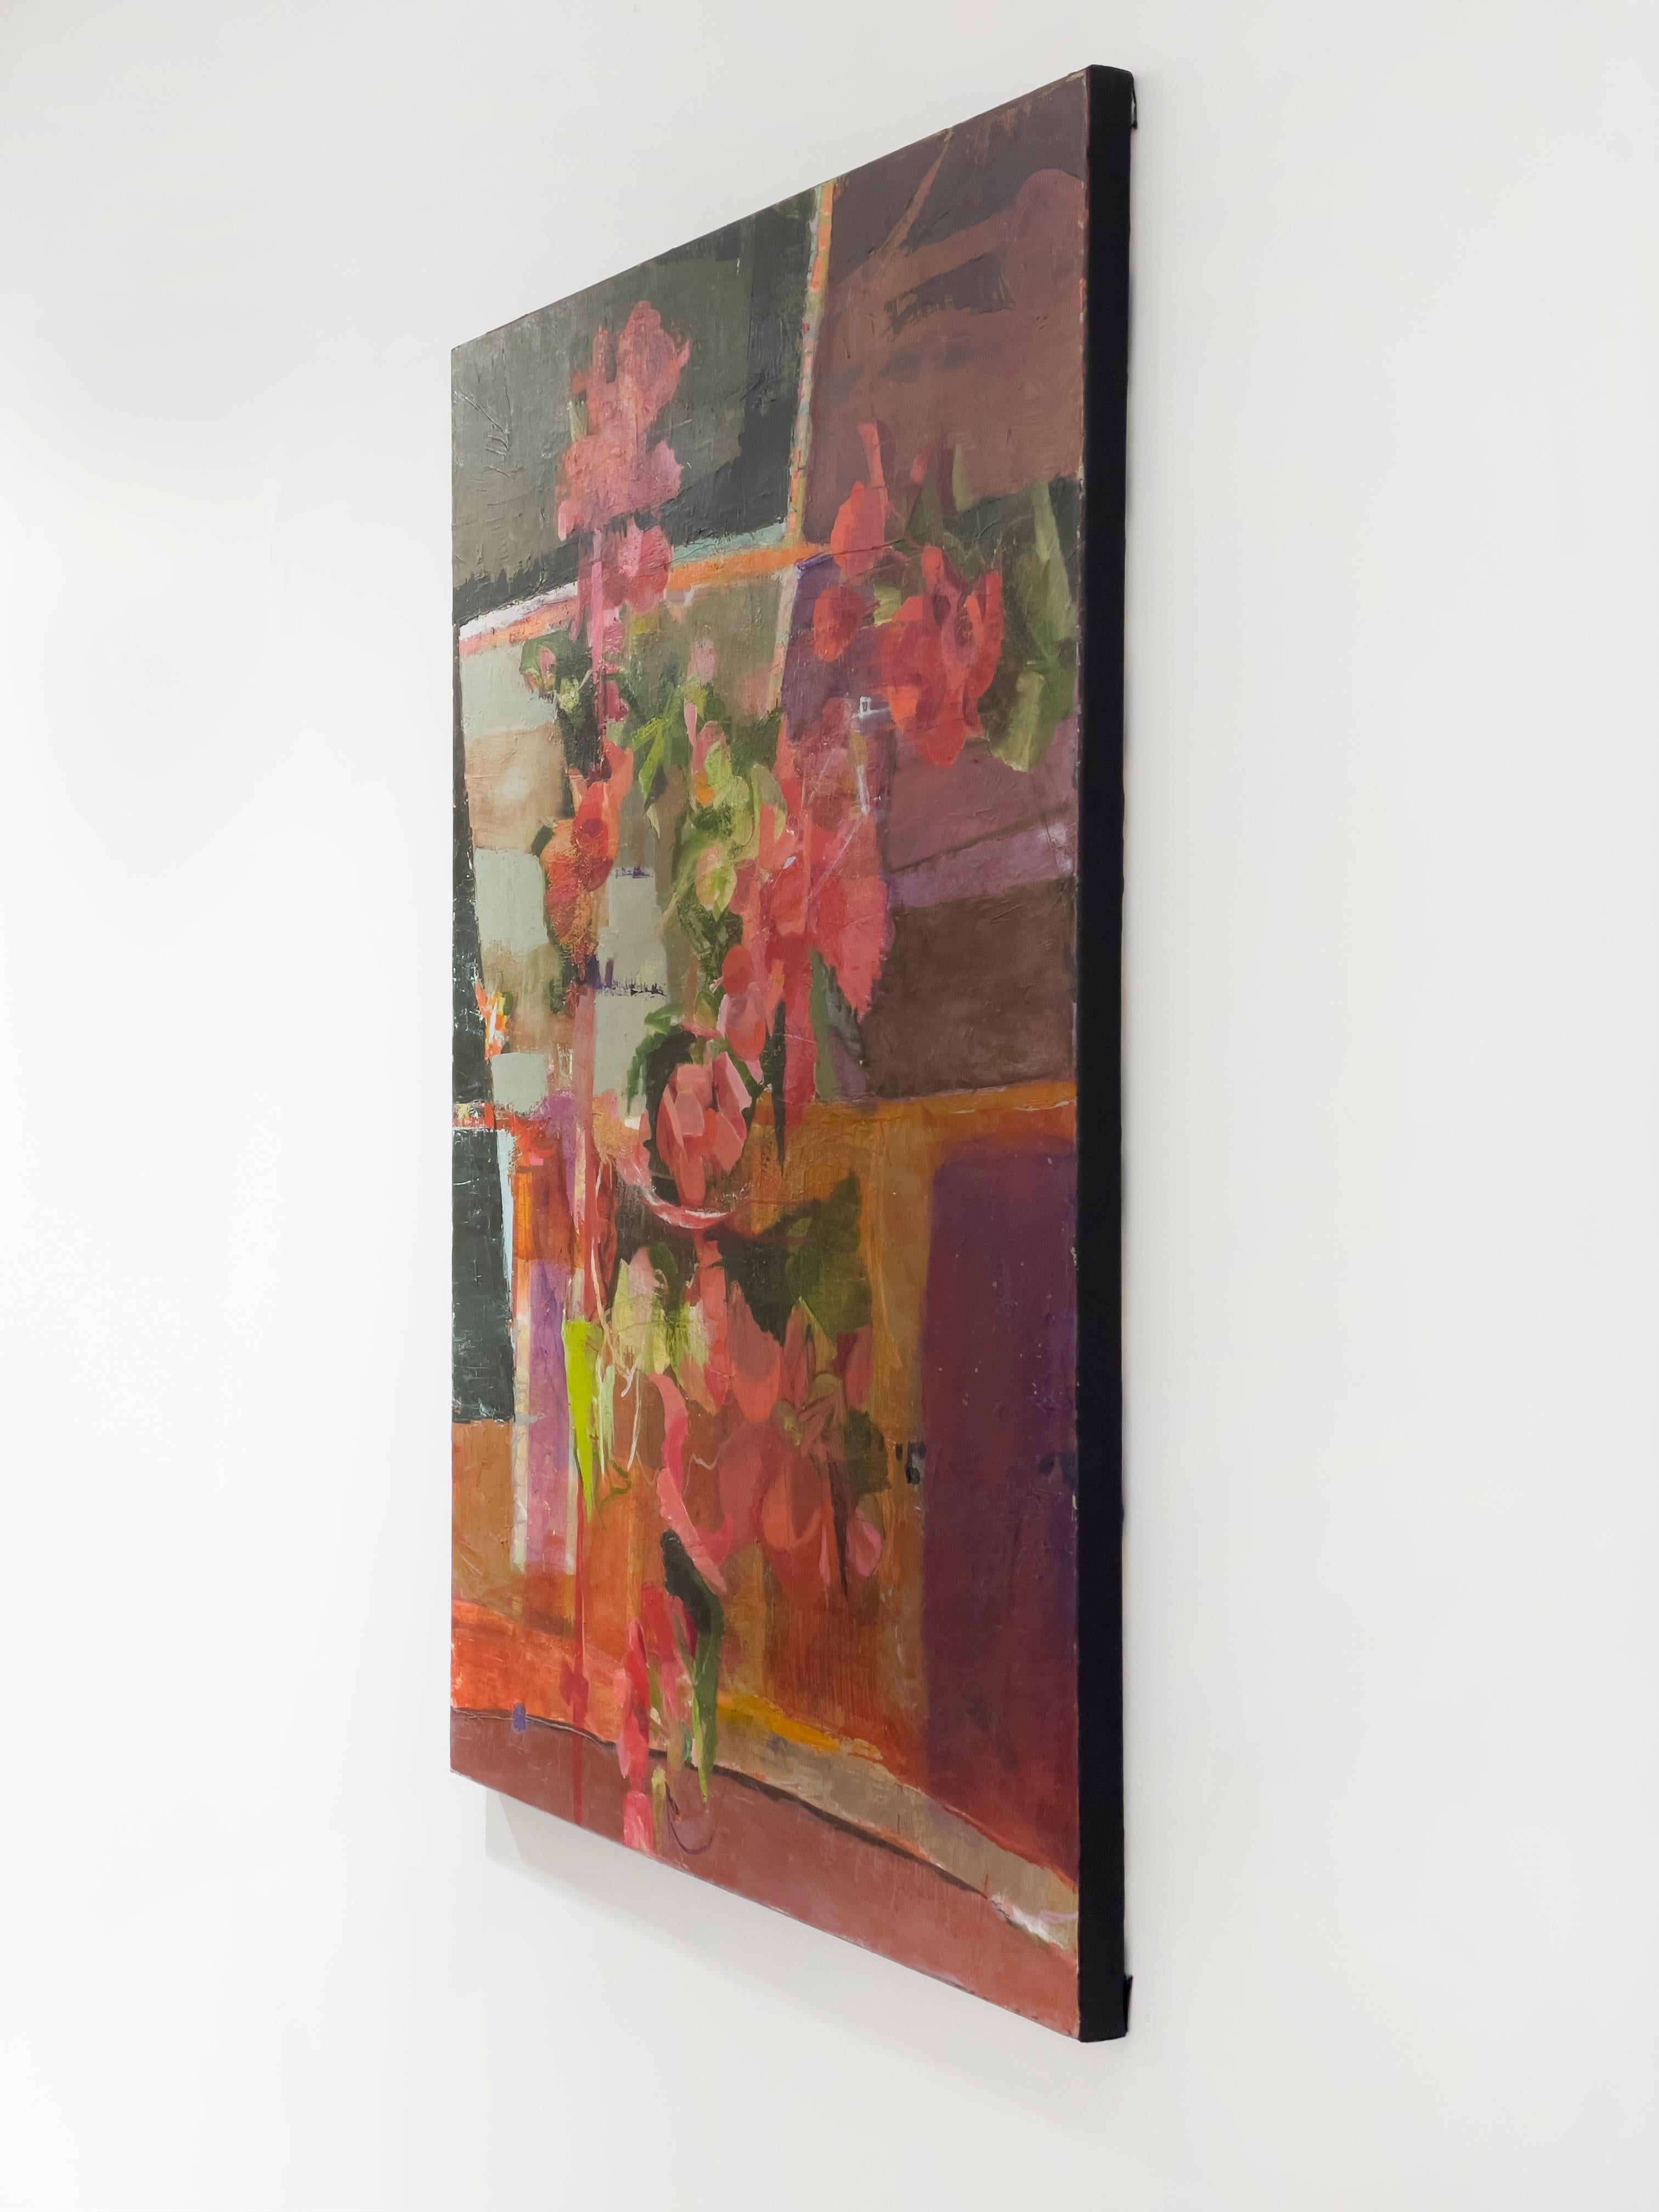 Ce grand tableau floral abstrait de Christine Averill-Green est une peinture à l'huile réalisée sur une toile emballée dans une galerie. Des panneaux de couleur rose et verte sont regroupés pour créer les ombres et les lumières subtiles d'une